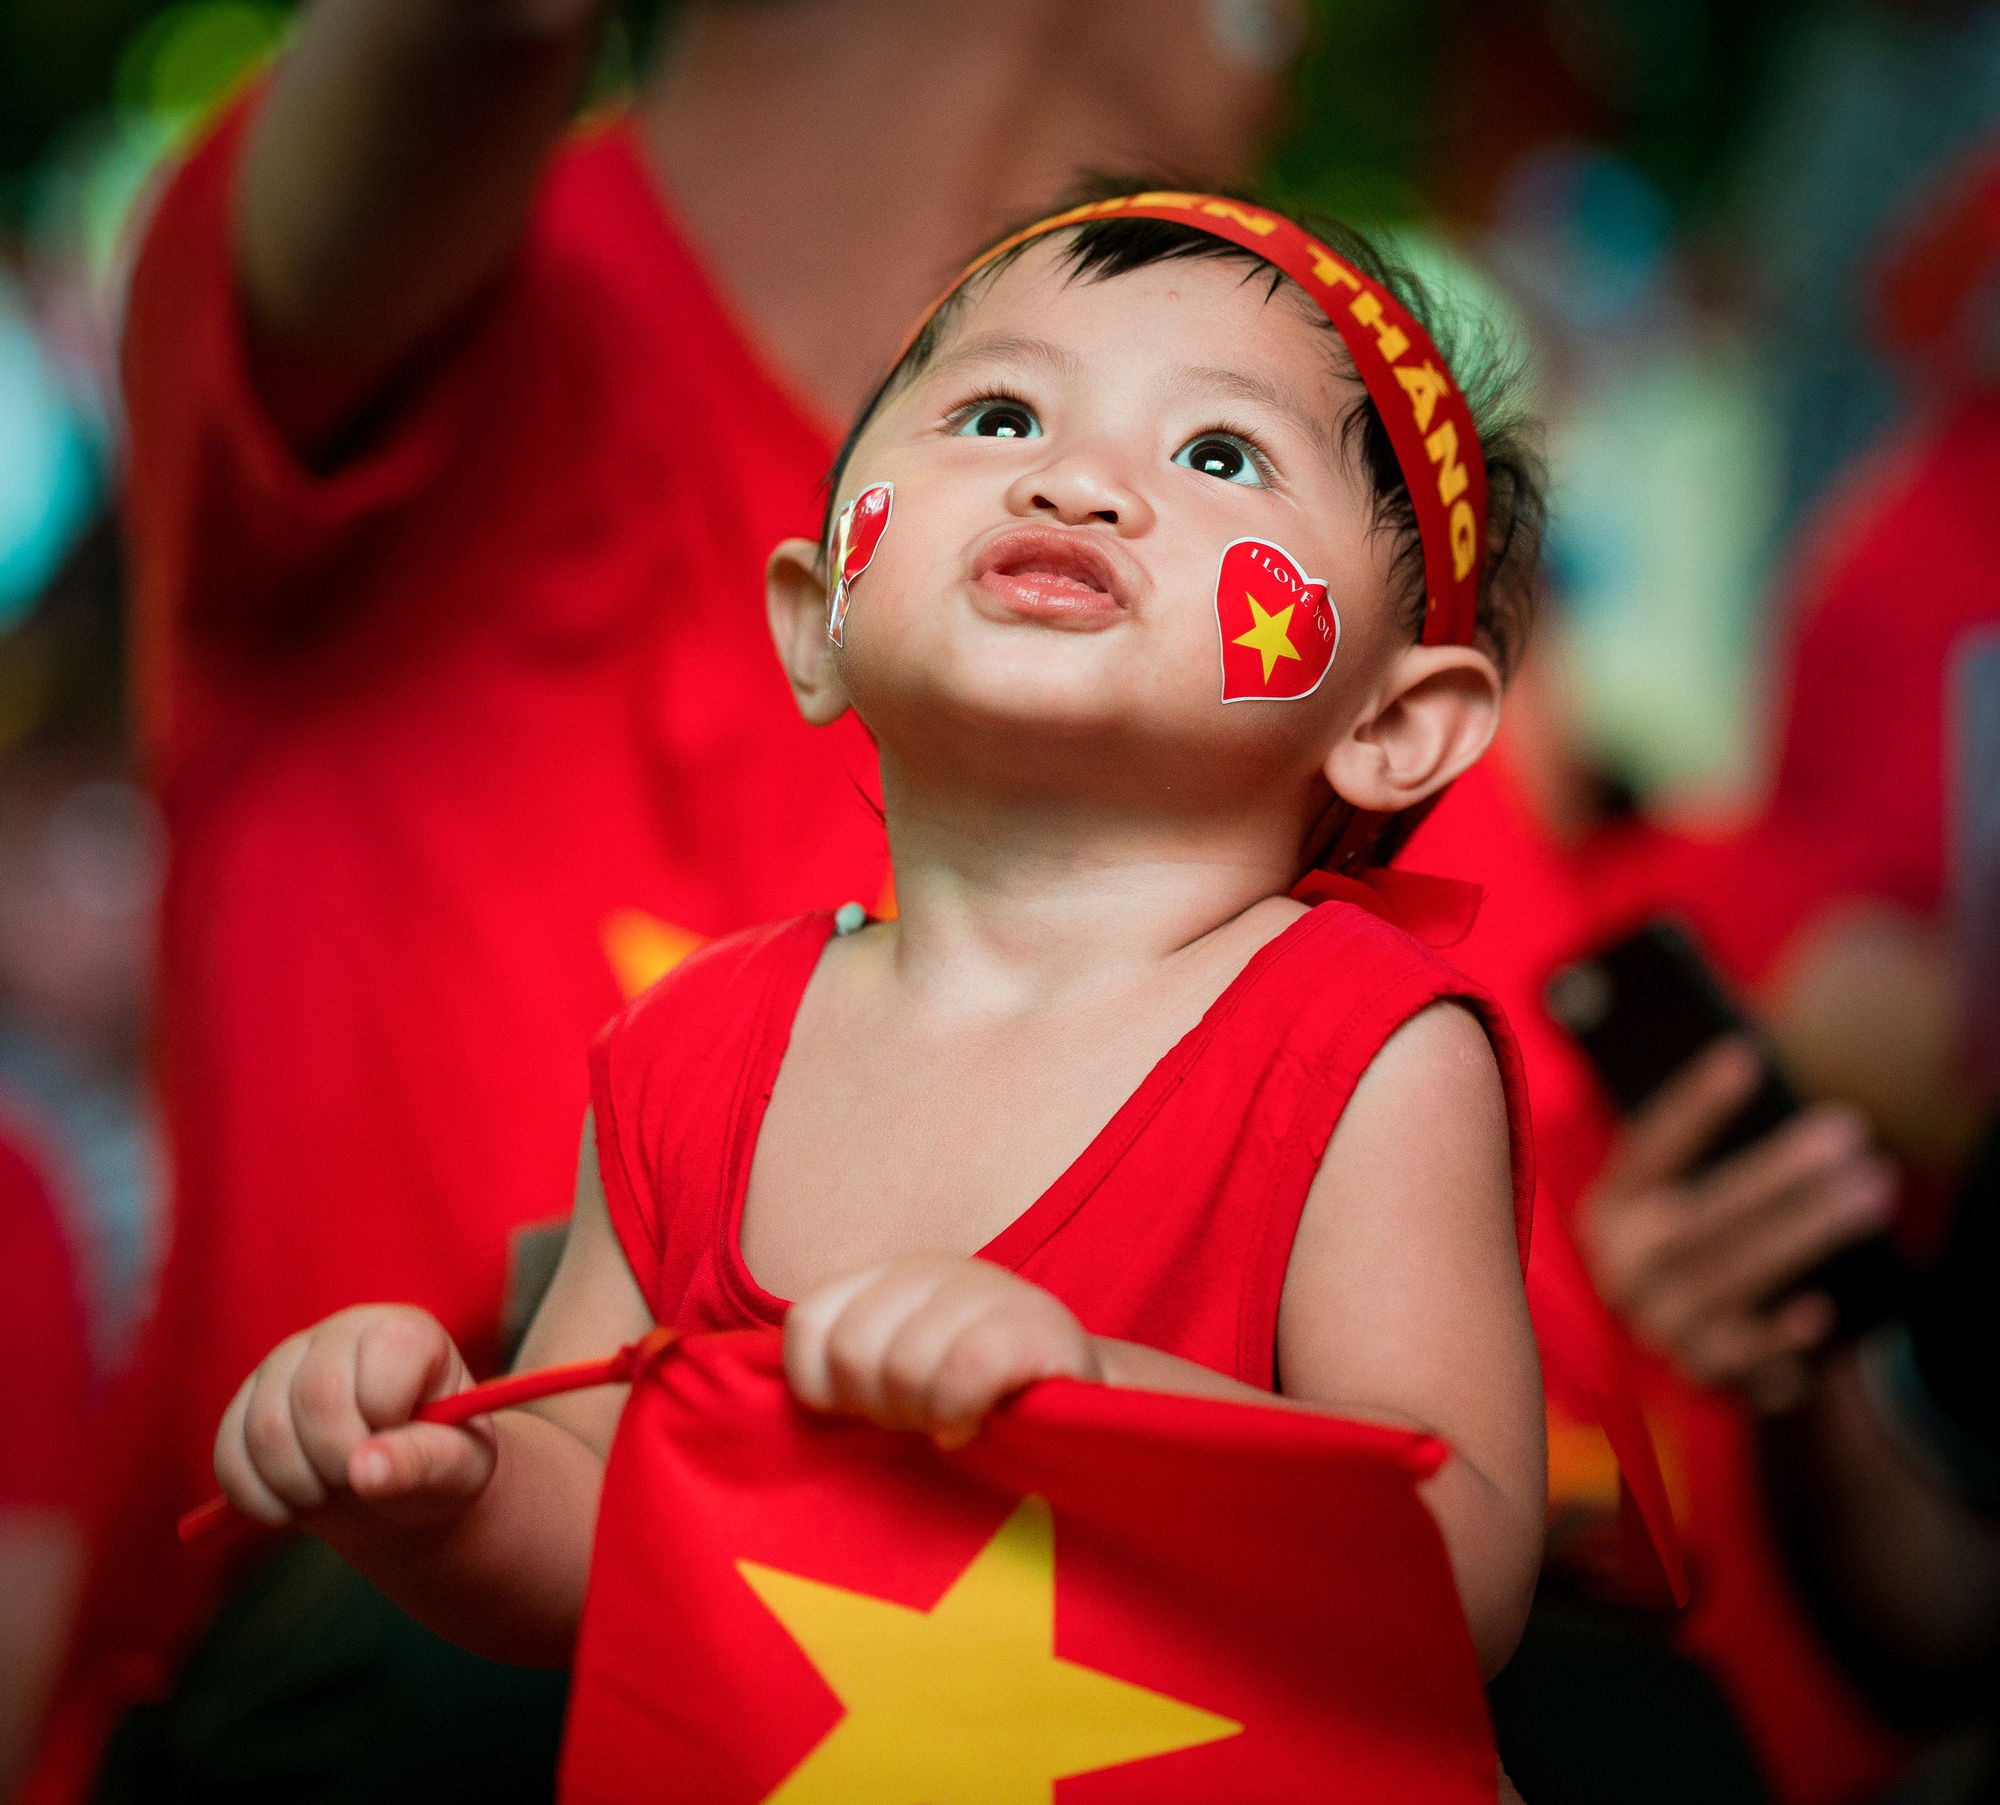 Cờ tổ quốc là biểu tượng linh thiêng, đích thực của toàn dân Việt Nam. Từ khi được sáng lập, cờ Tổ quốc đã trở thành niềm tự hào và quang vinh của toàn dân. Hãy cùng chiêm ngưỡng những hình ảnh cờ Tổ quốc đẹp để cảm nhận sự thiêng liêng và vinh quang của cờ Tổ quốc Việt Nam.